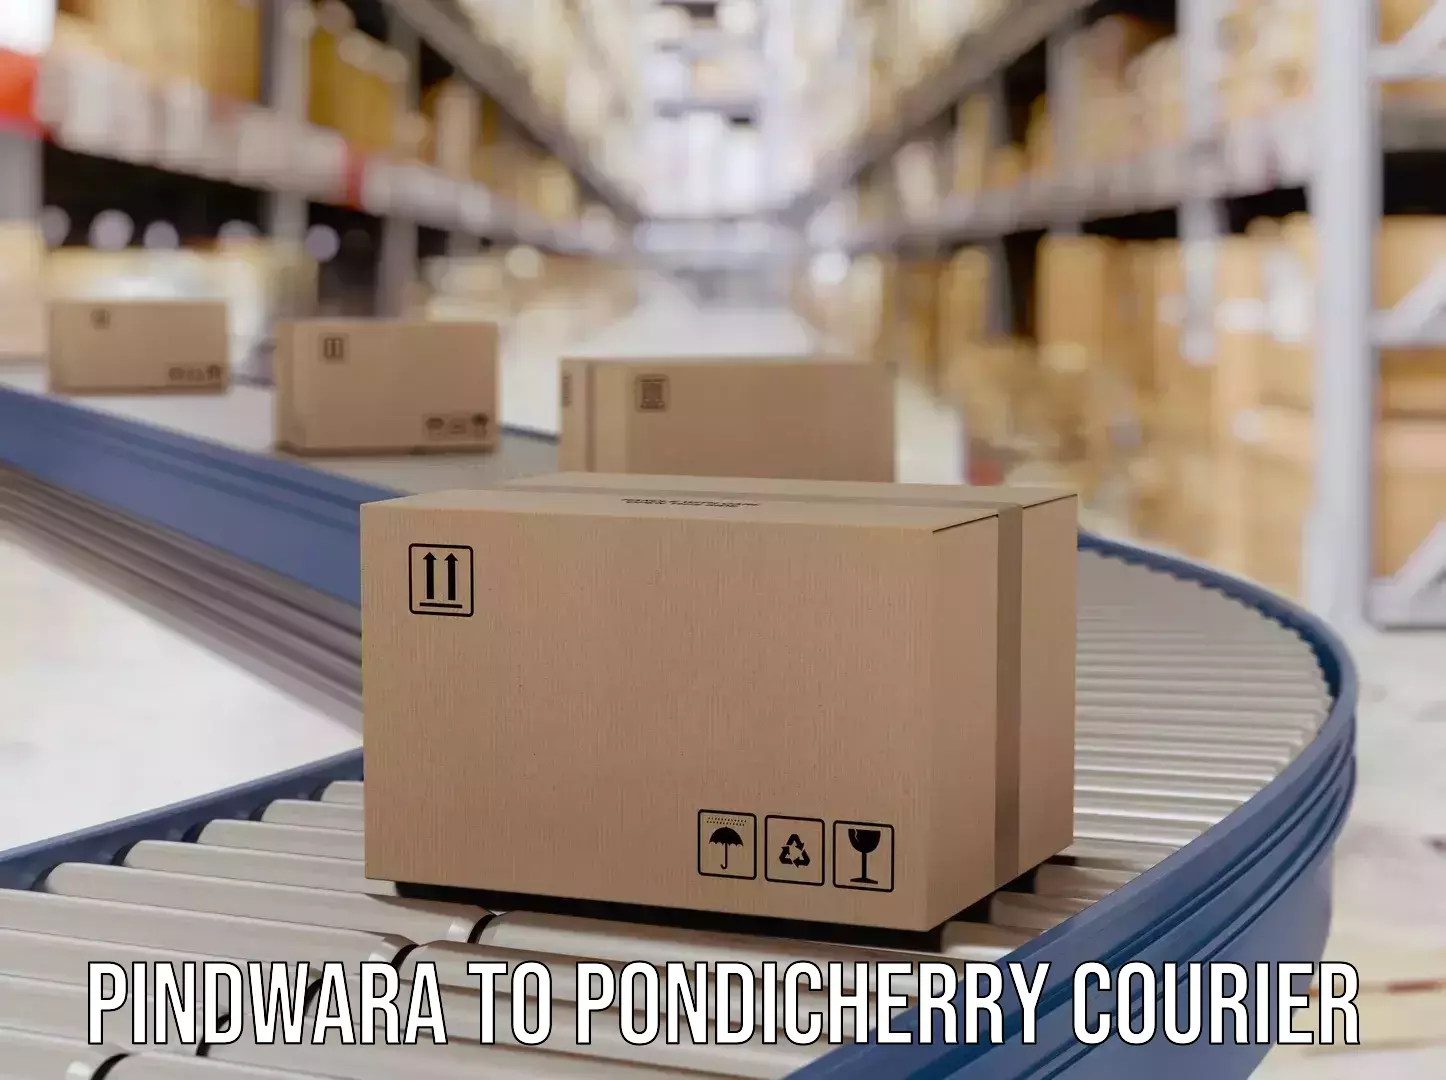 Nationwide courier service Pindwara to Pondicherry